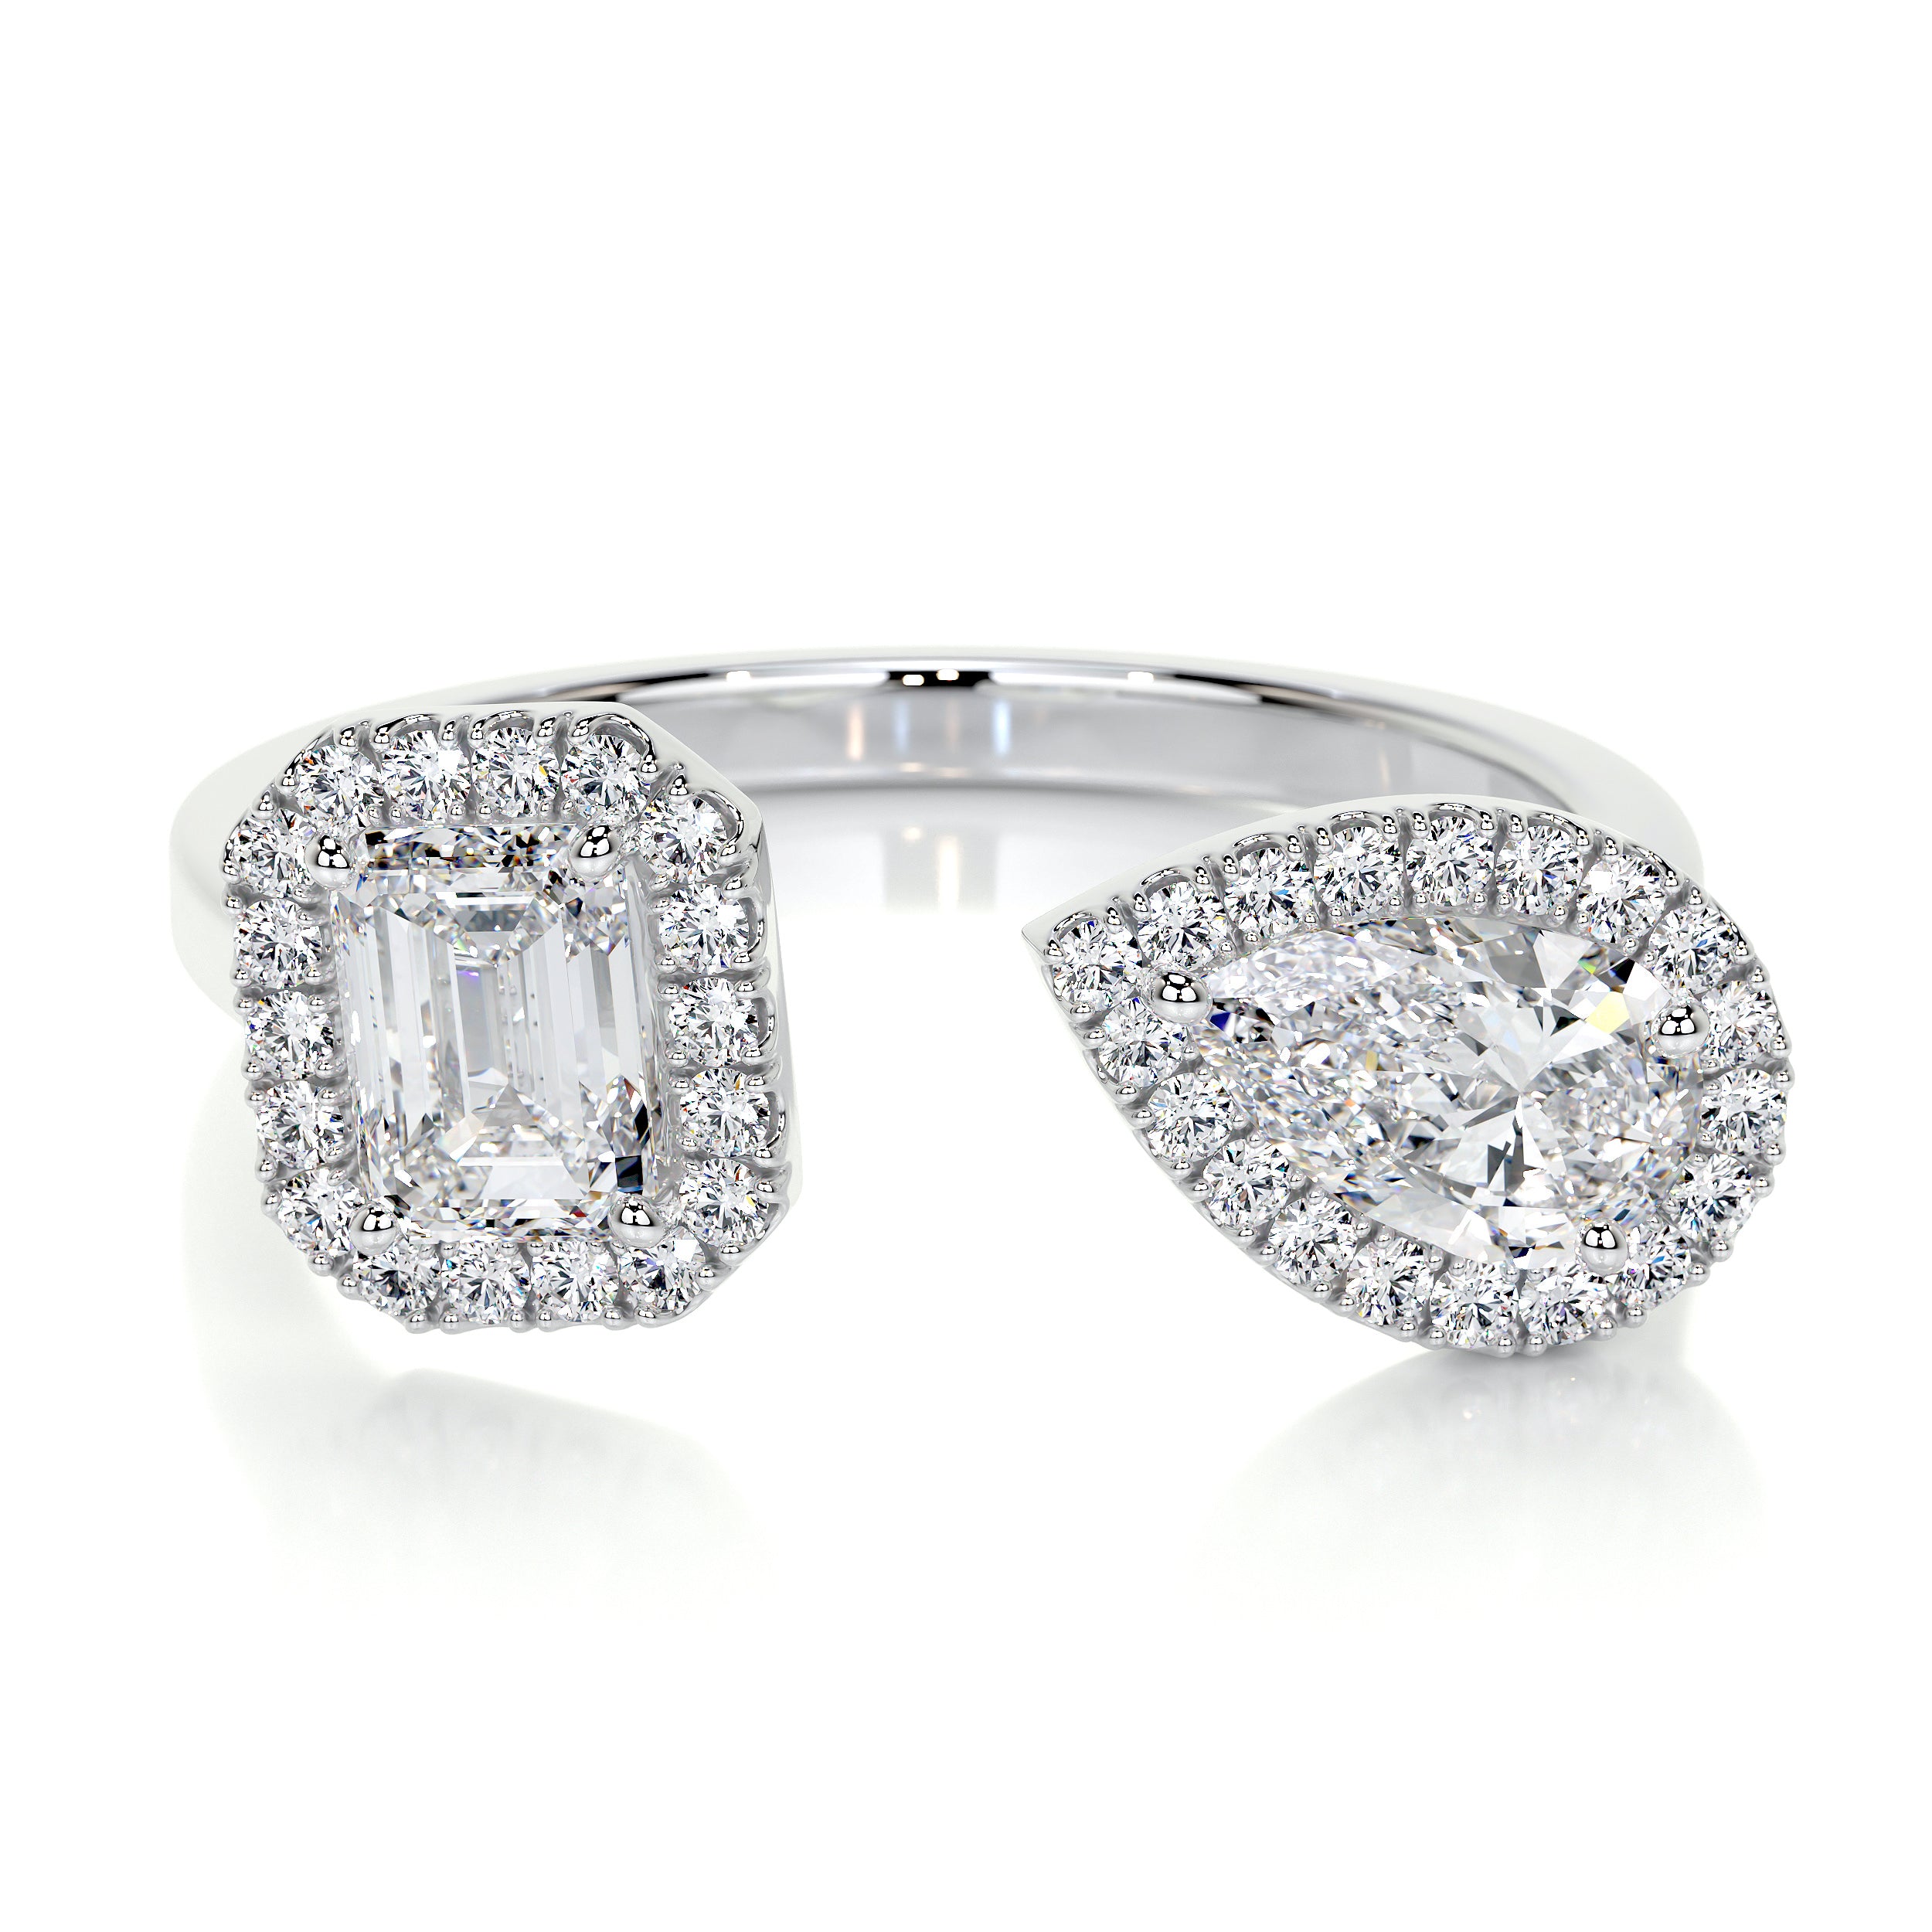 Edith Lab Grown Diamond Wedding Ring   (1.2 Carat) -14K White Gold